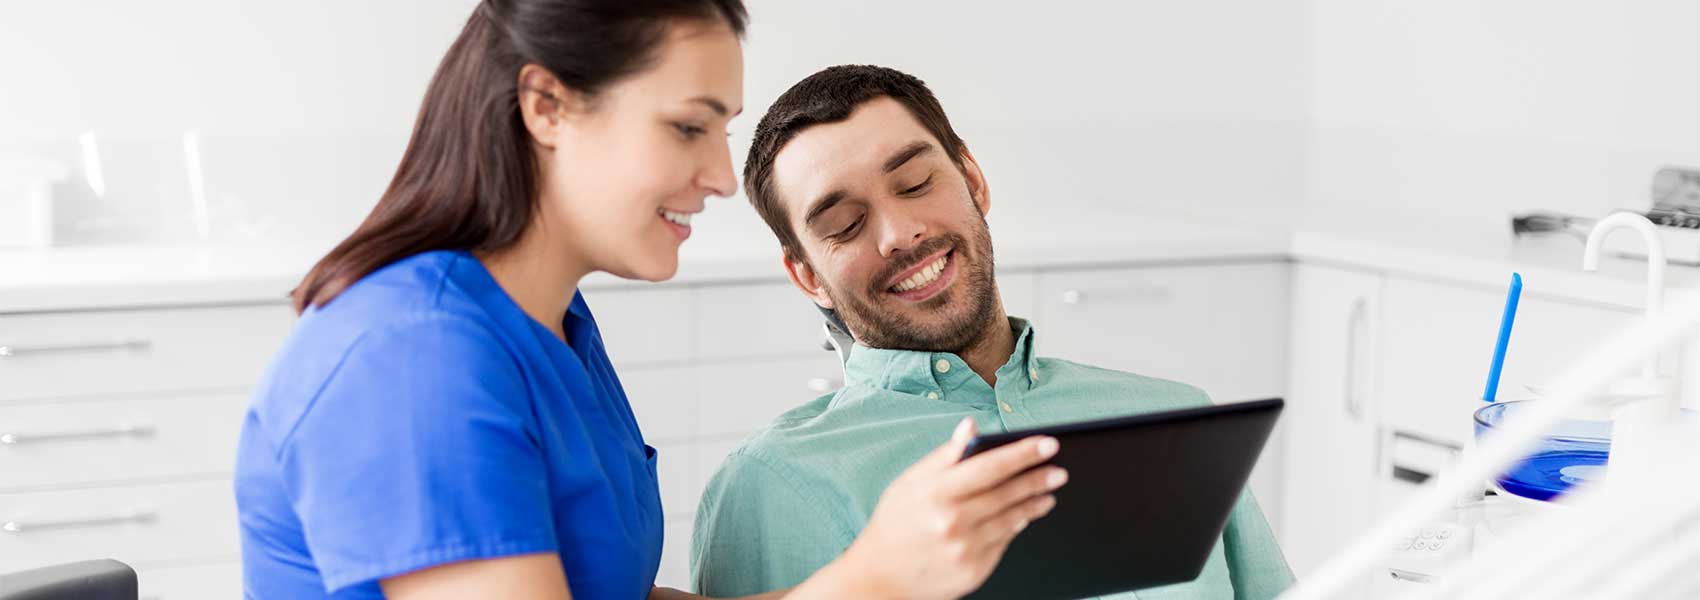 The dentist filling her patient's patient form via online